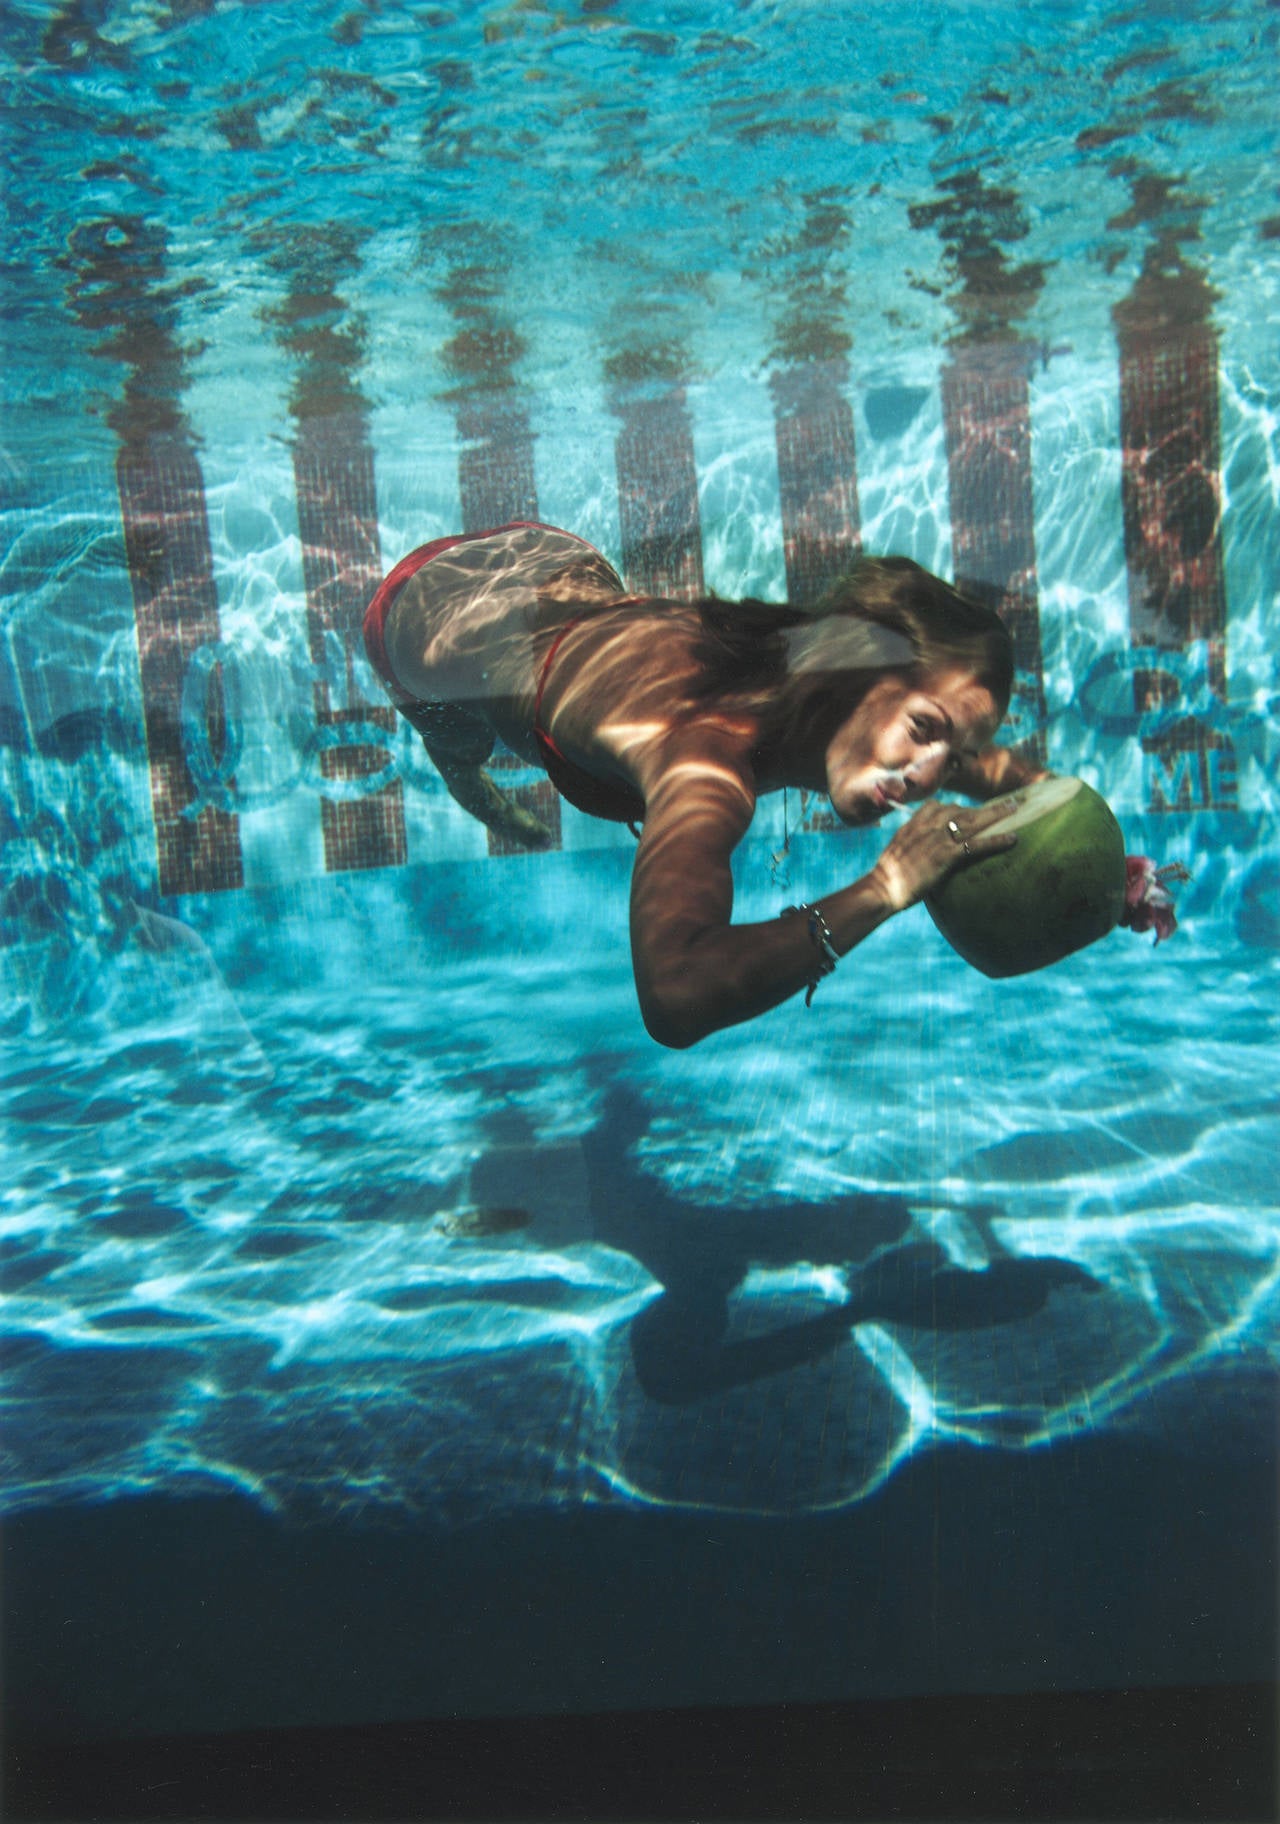 Eine Frau trinkt aus einer Kokosnuss unter Wasser im Pool des Hotels Las Brisas in Acapulco, Mexiko, Februar 1972. 

Nachlassgestempelte und handnummerierte Auflage von 150 Stück mit Echtheitszertifikat des Slim Aarons Estate. 

Slim Aarons